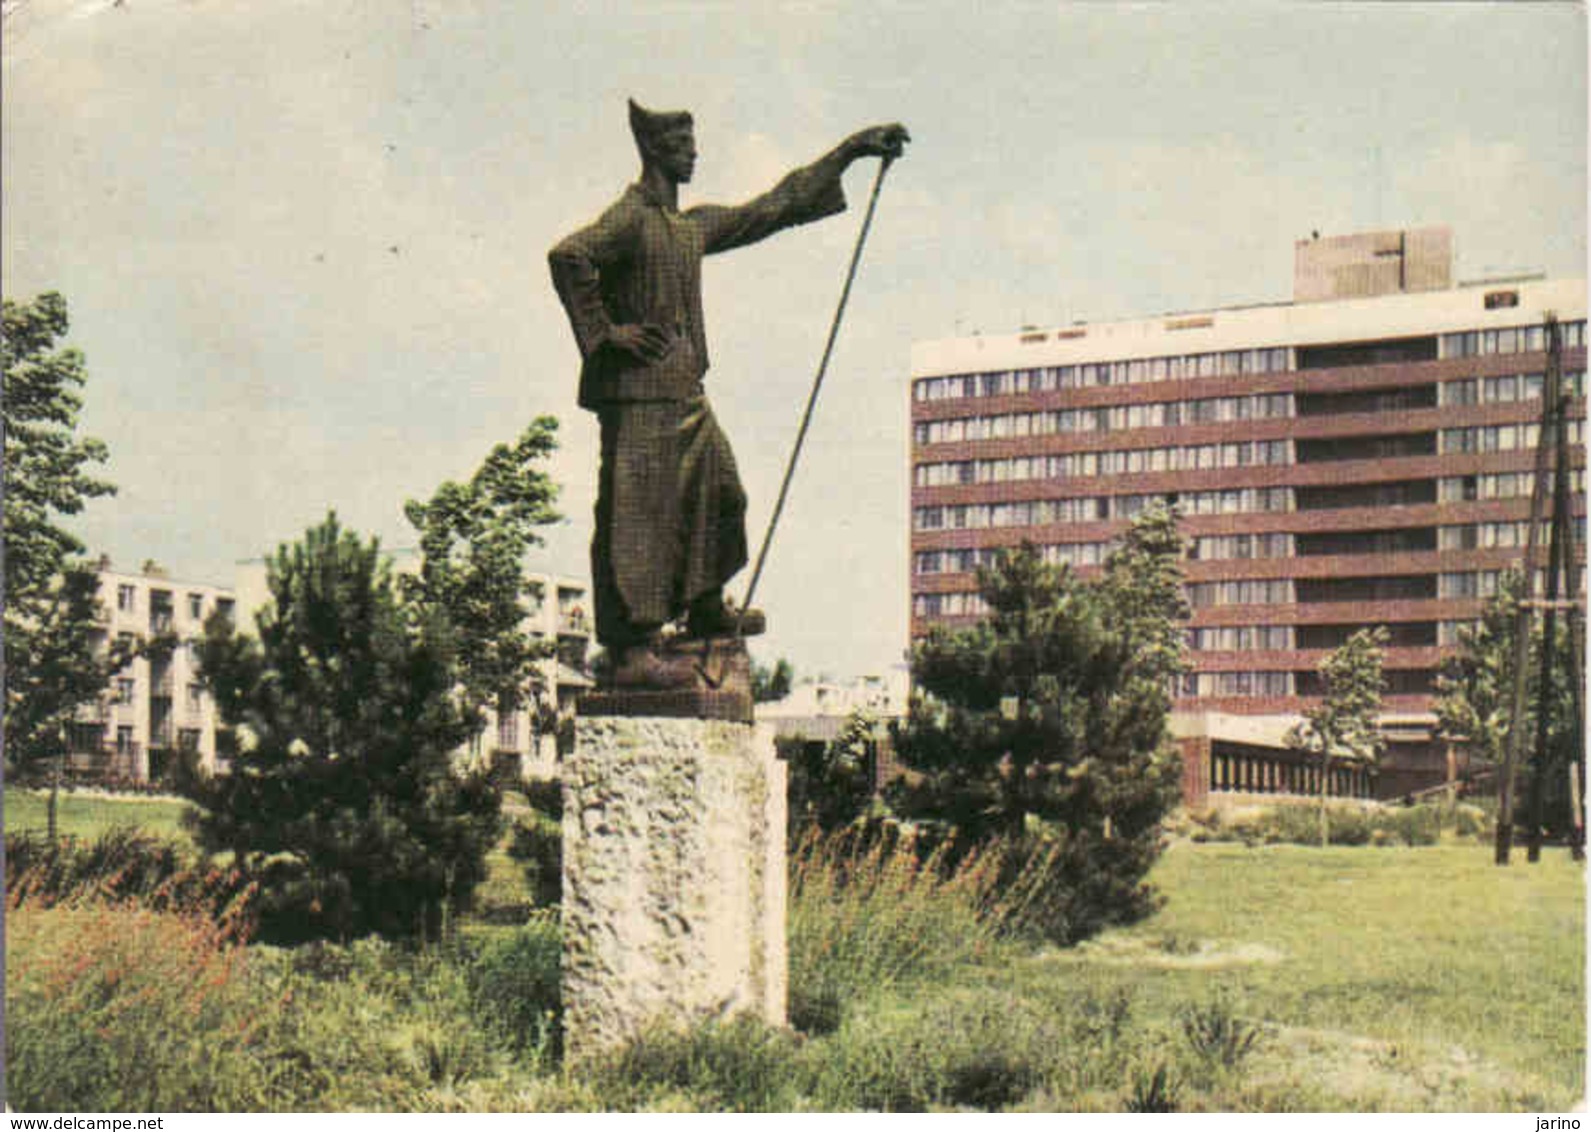 Hungary, Dunaujvaros, Denkmal Somogyi Joszef, Gebraucht - Used 1965 - Hungary